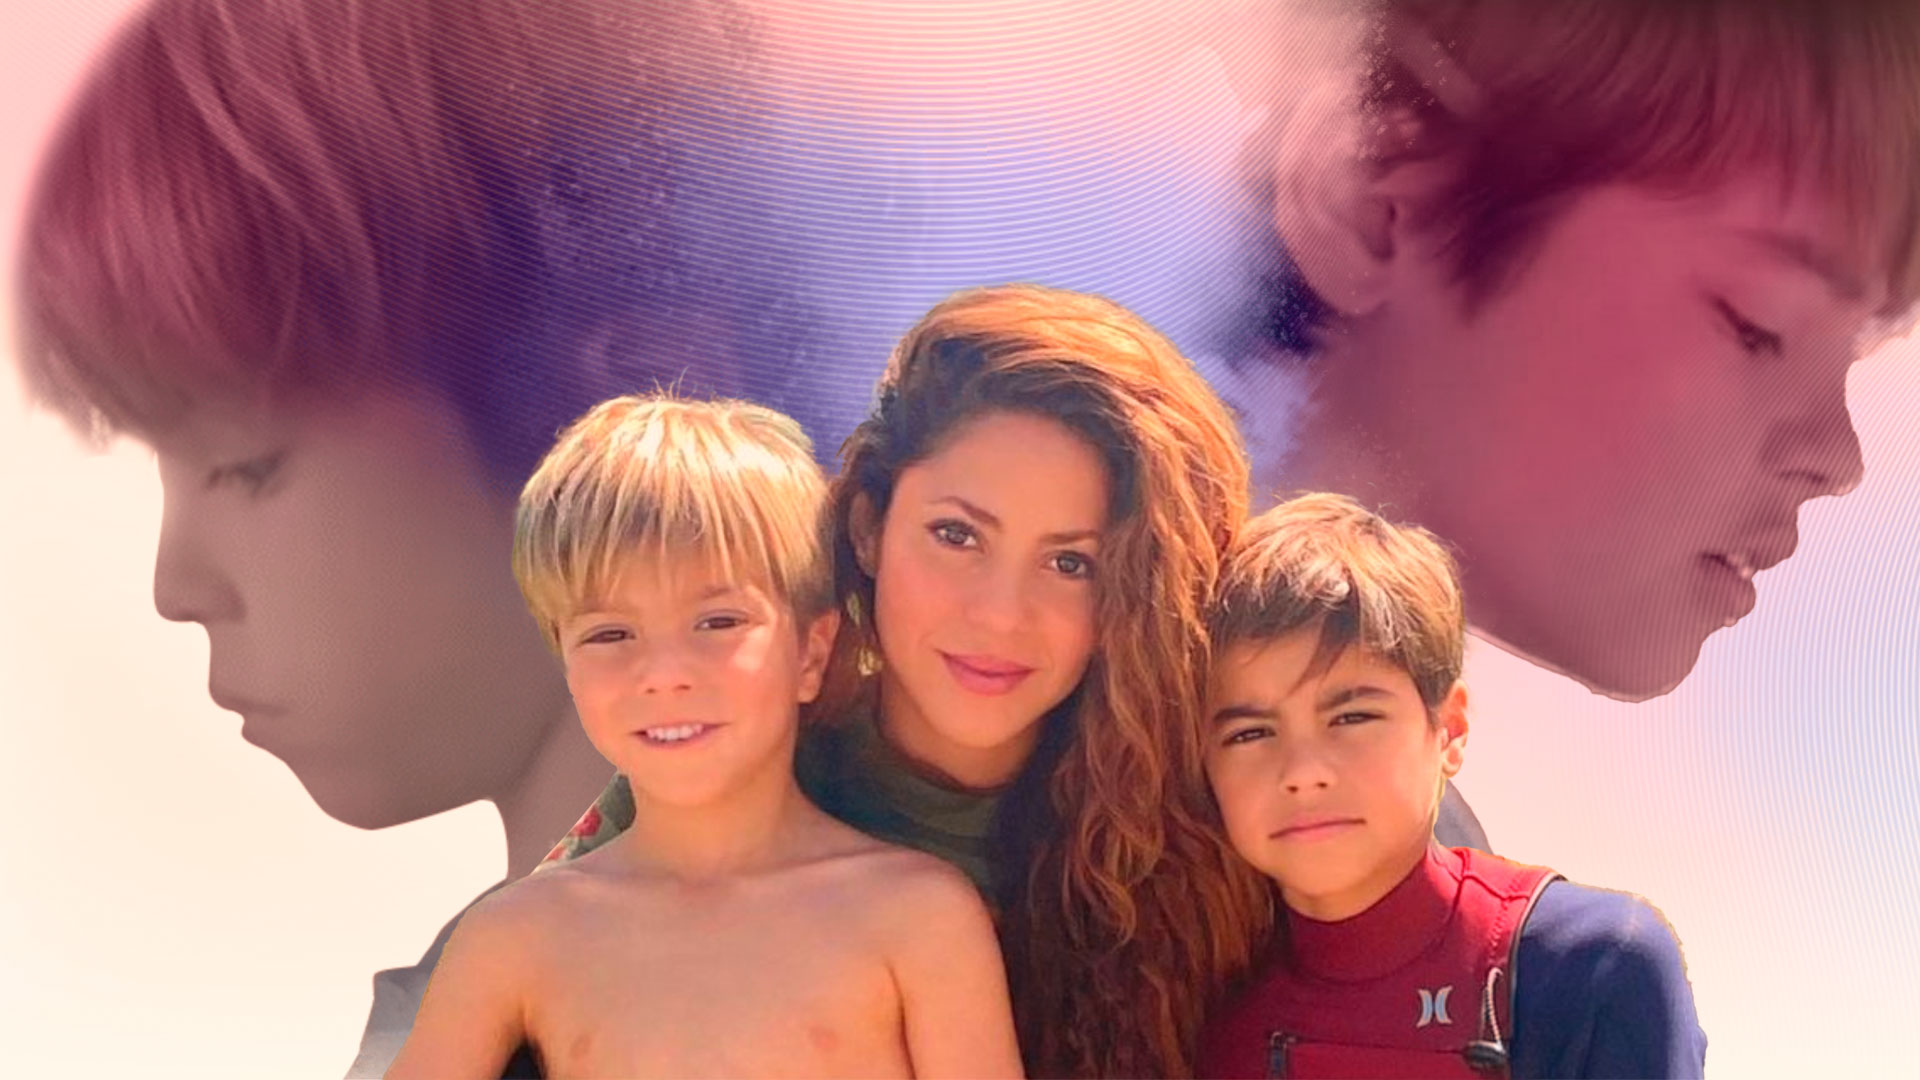 Hijos de Shakira estarían viviendo un “infierno” por cuenta de los “paparazzi”